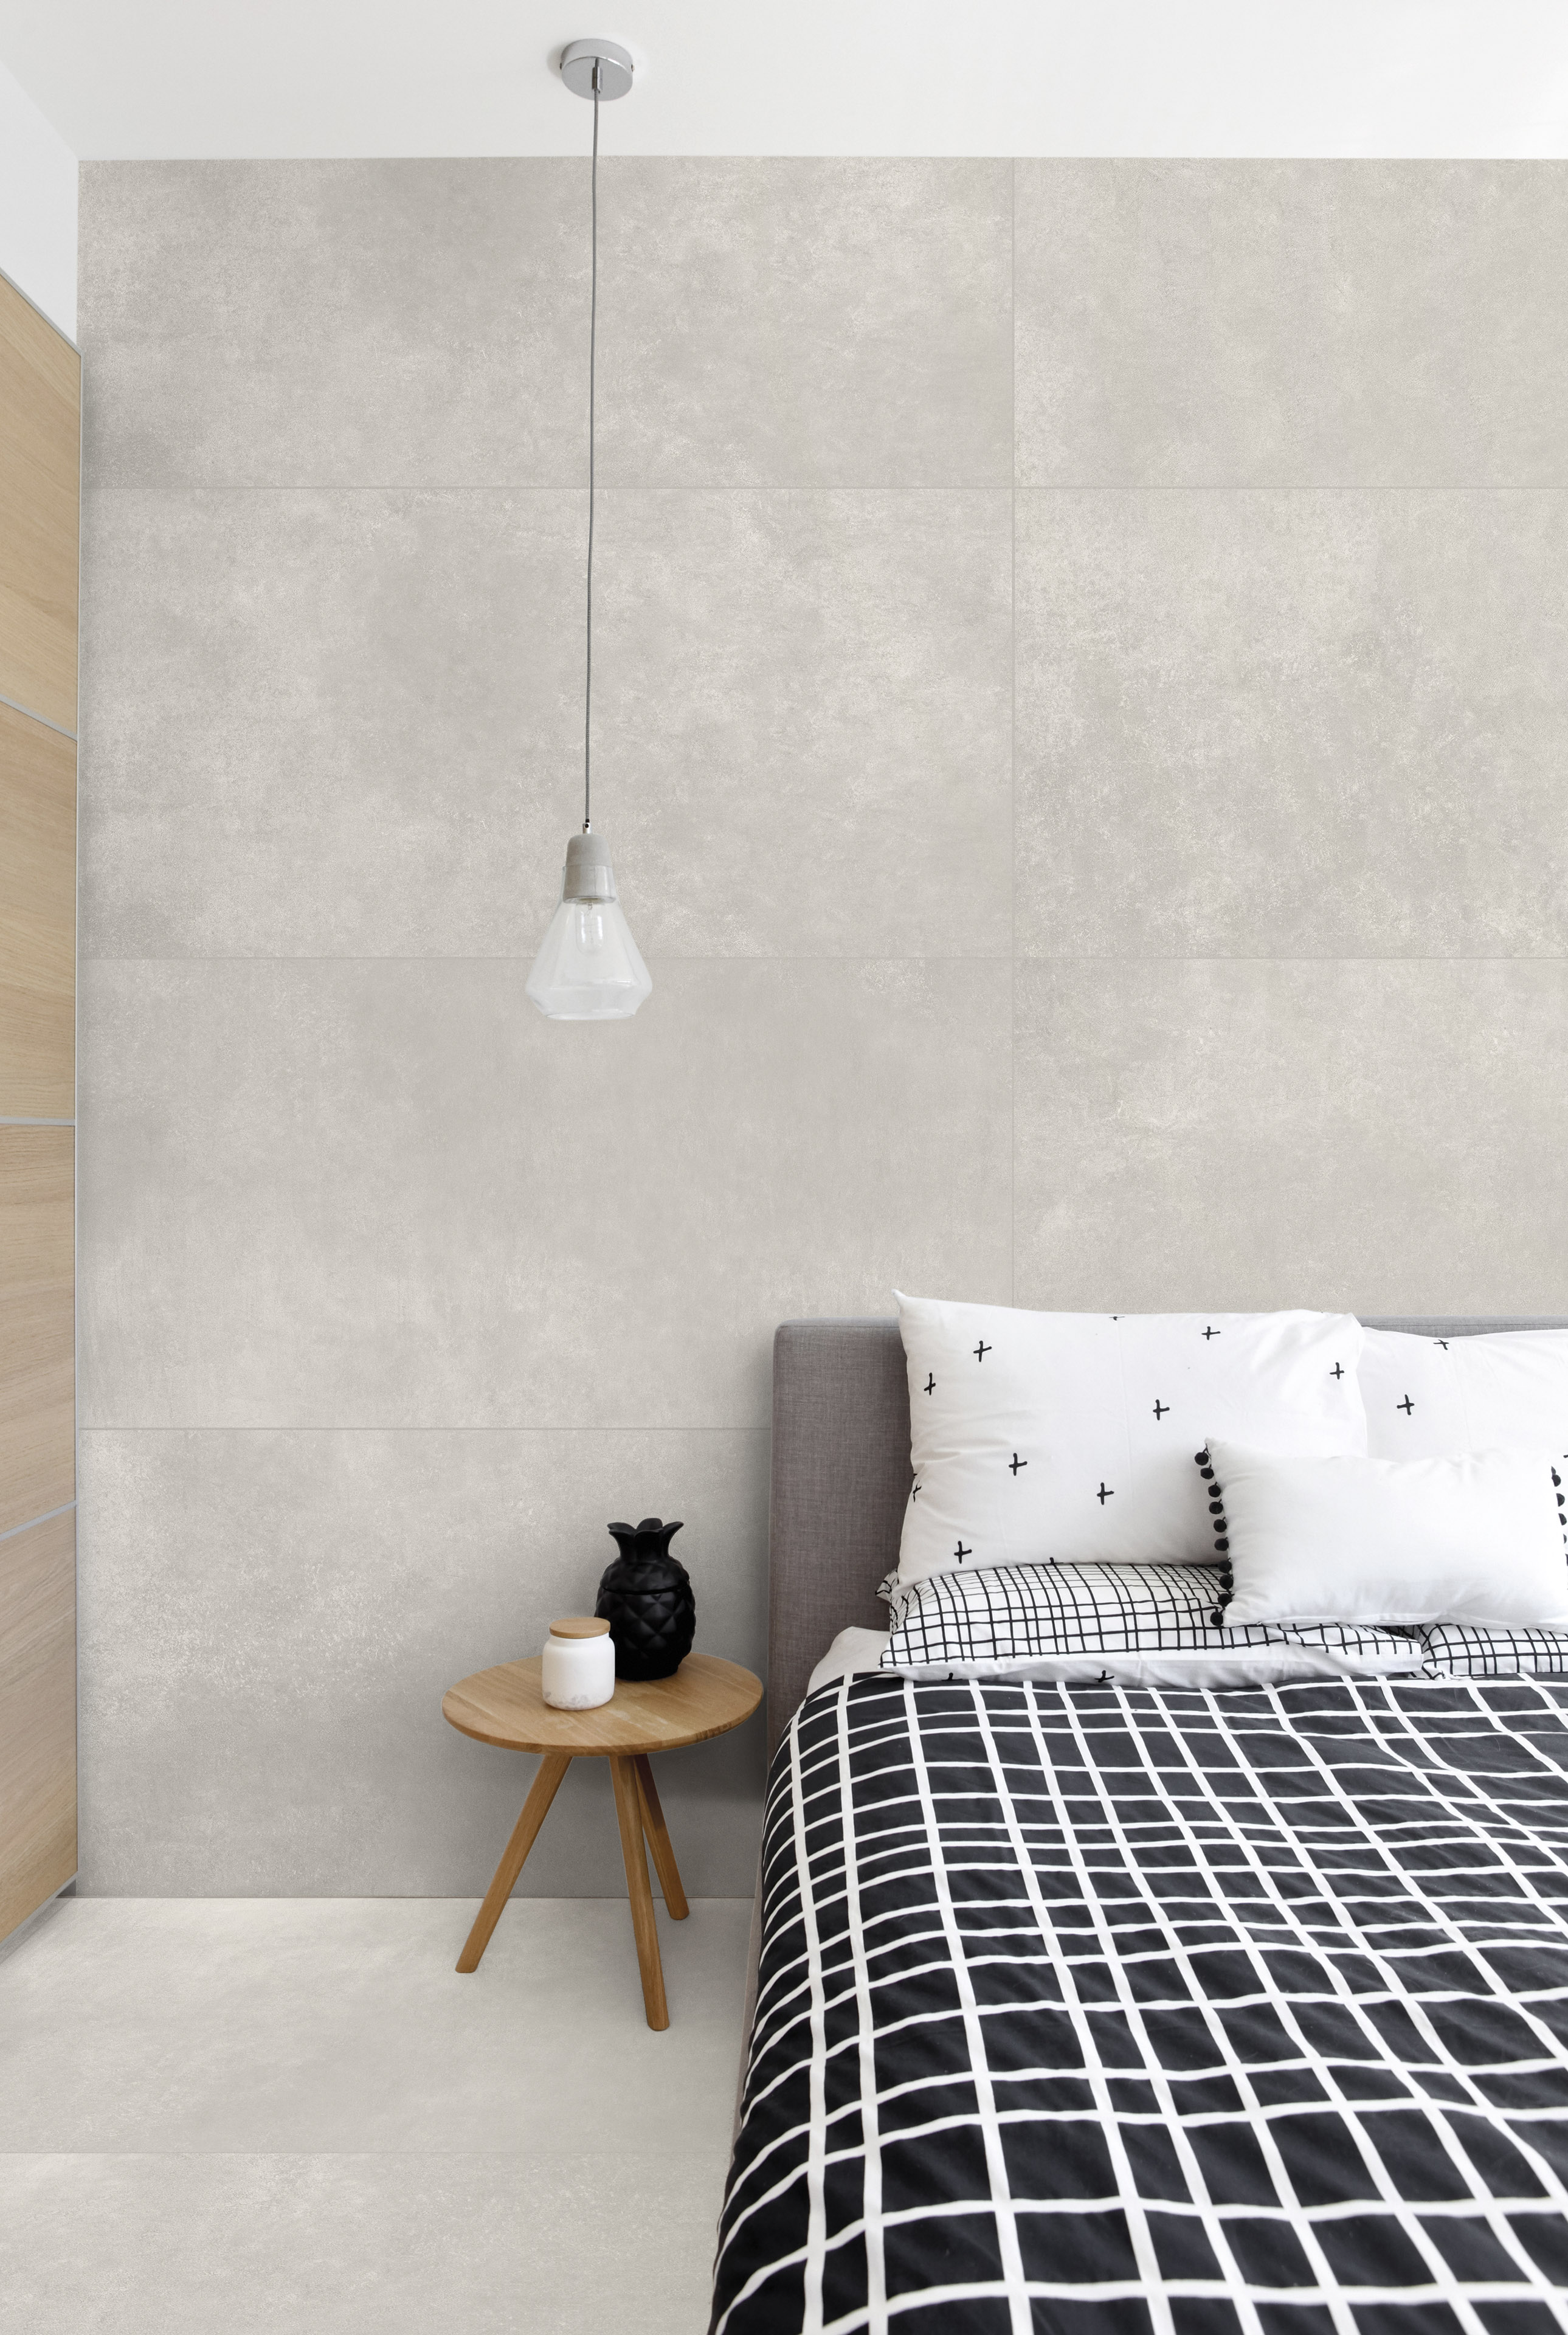 Simples, funcional e elegante, o quarto minimalista tem apenas o suficiente para se viver com conforto (Projeto: Portobello S.A.)